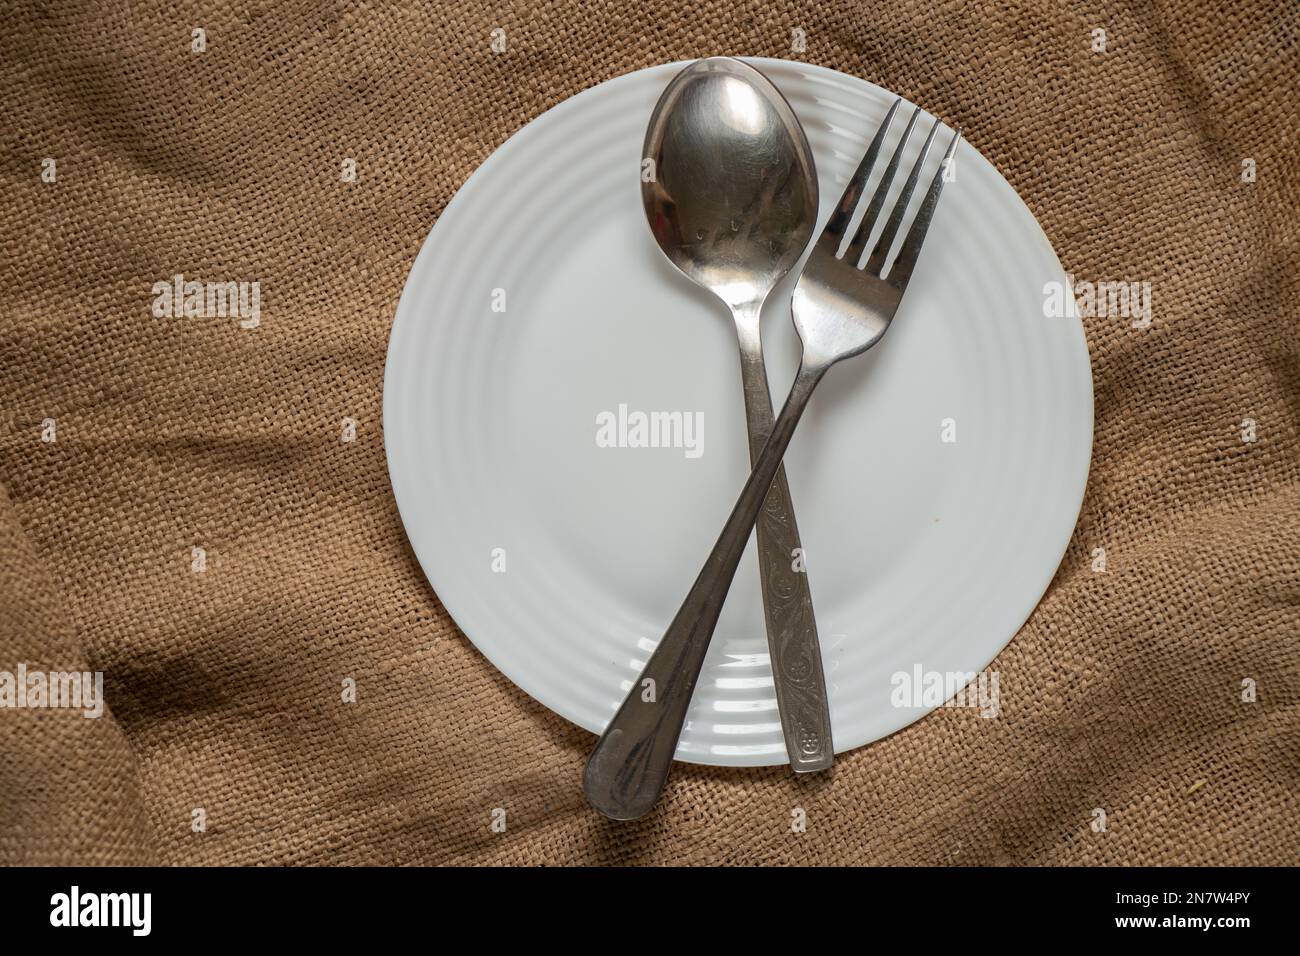 la fourchette de la cuillère repose sur une assiette blanche sur un vieux recouvrement sur la table de près Banque D'Images